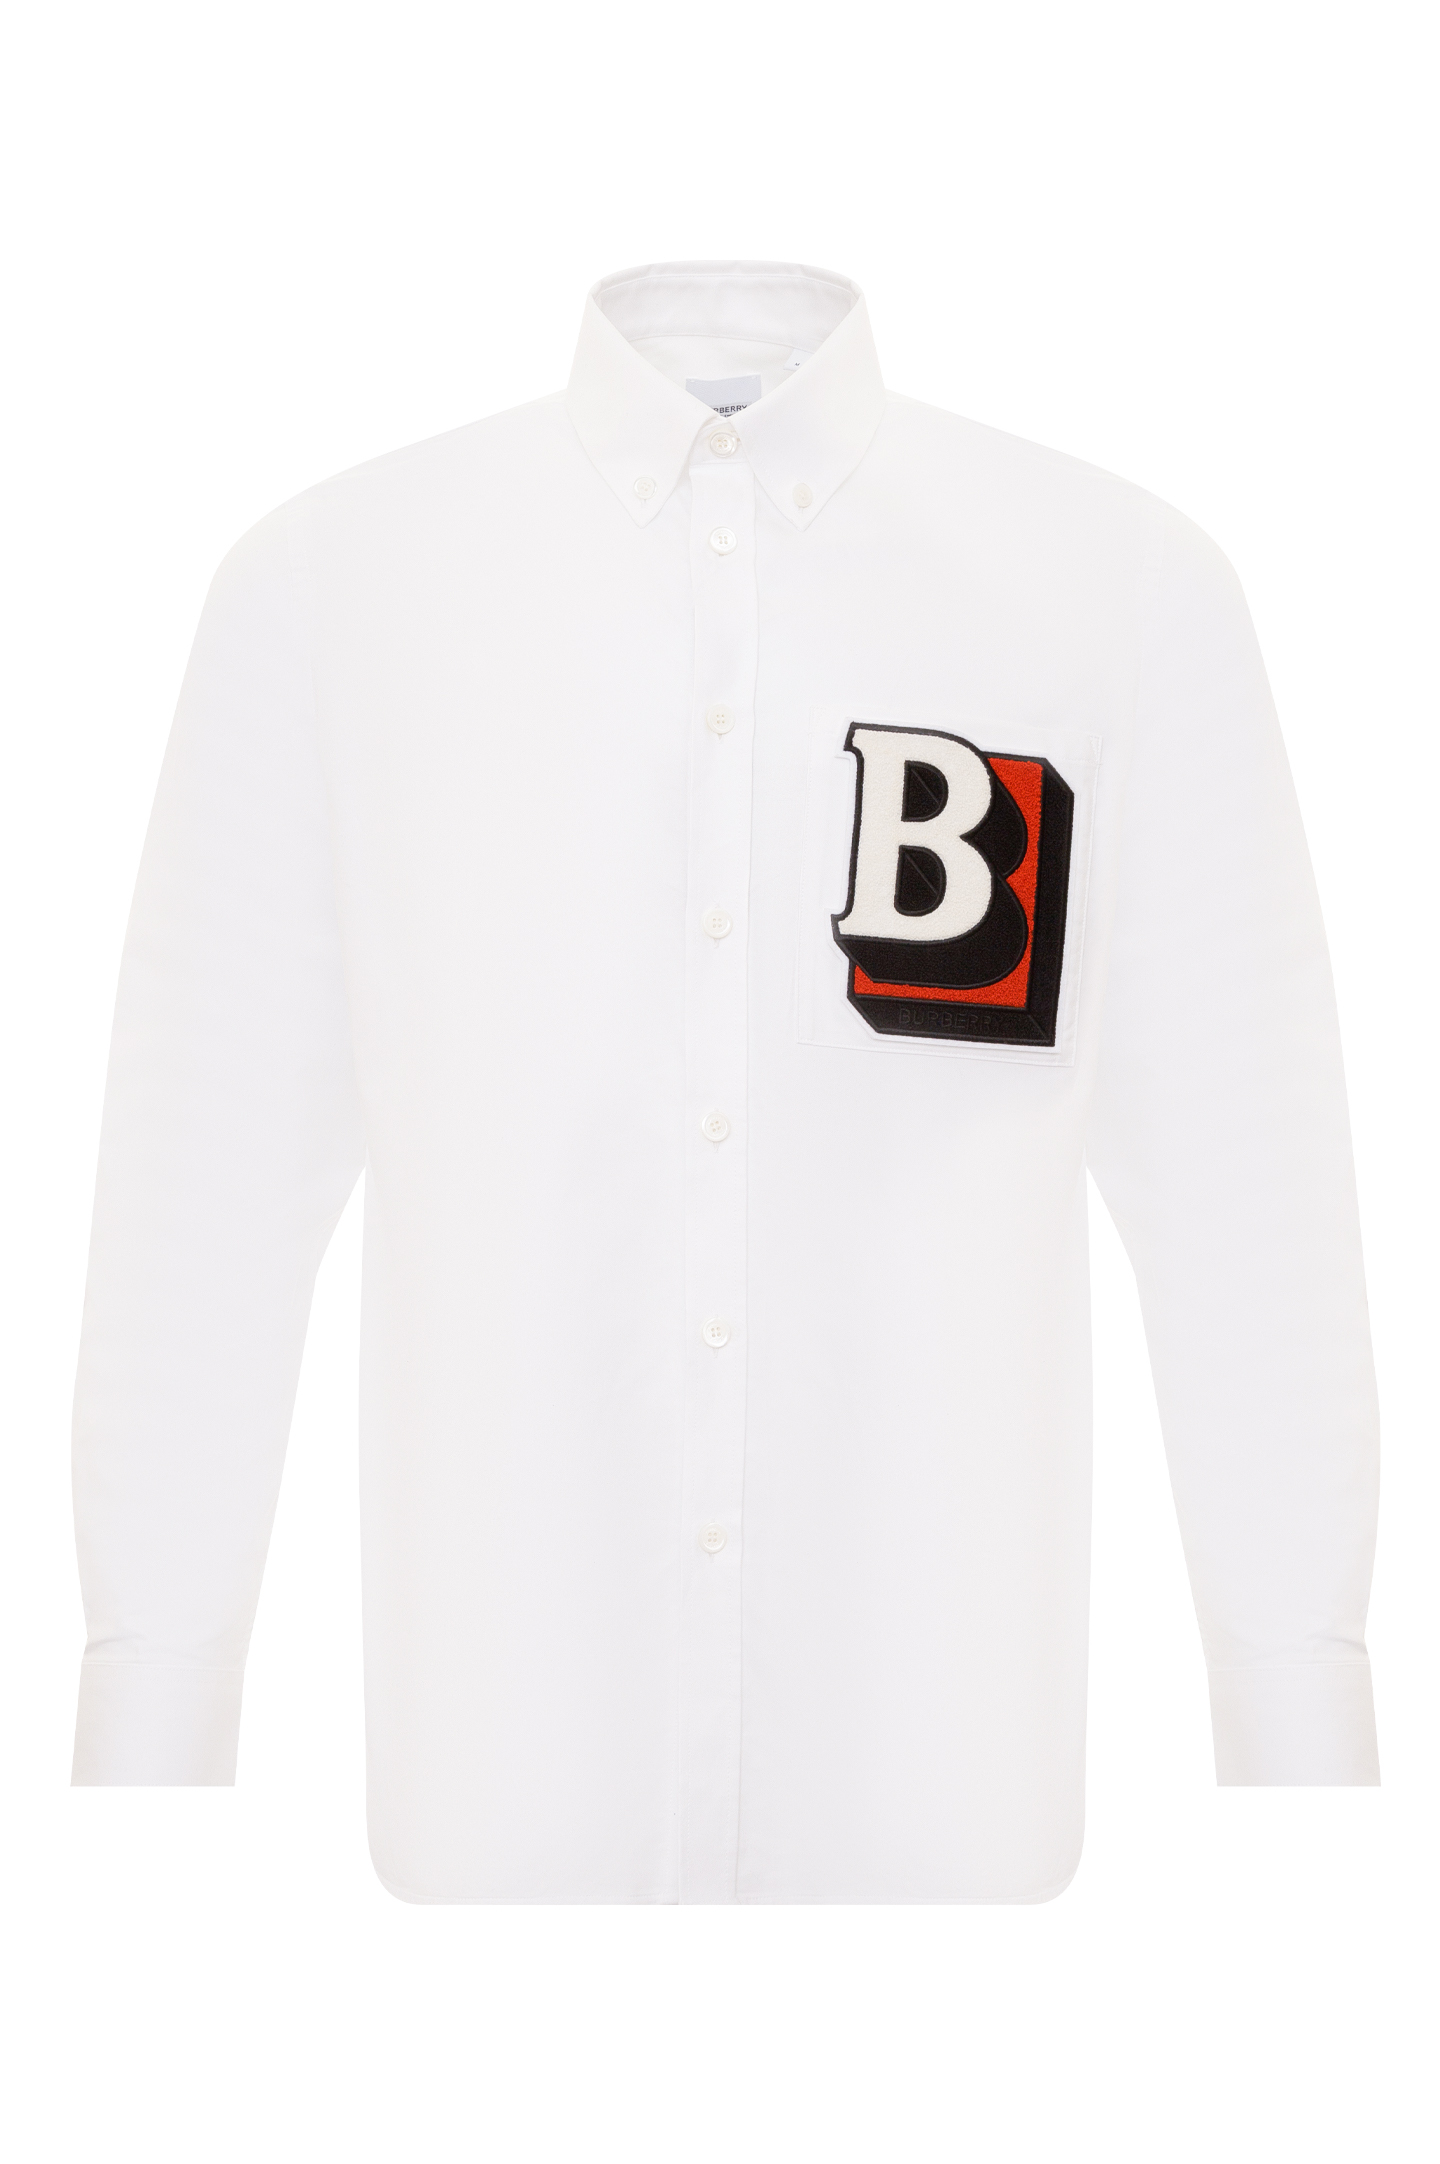 Рубашка BURBERRY 8050134, цвет: Белый, Мужской